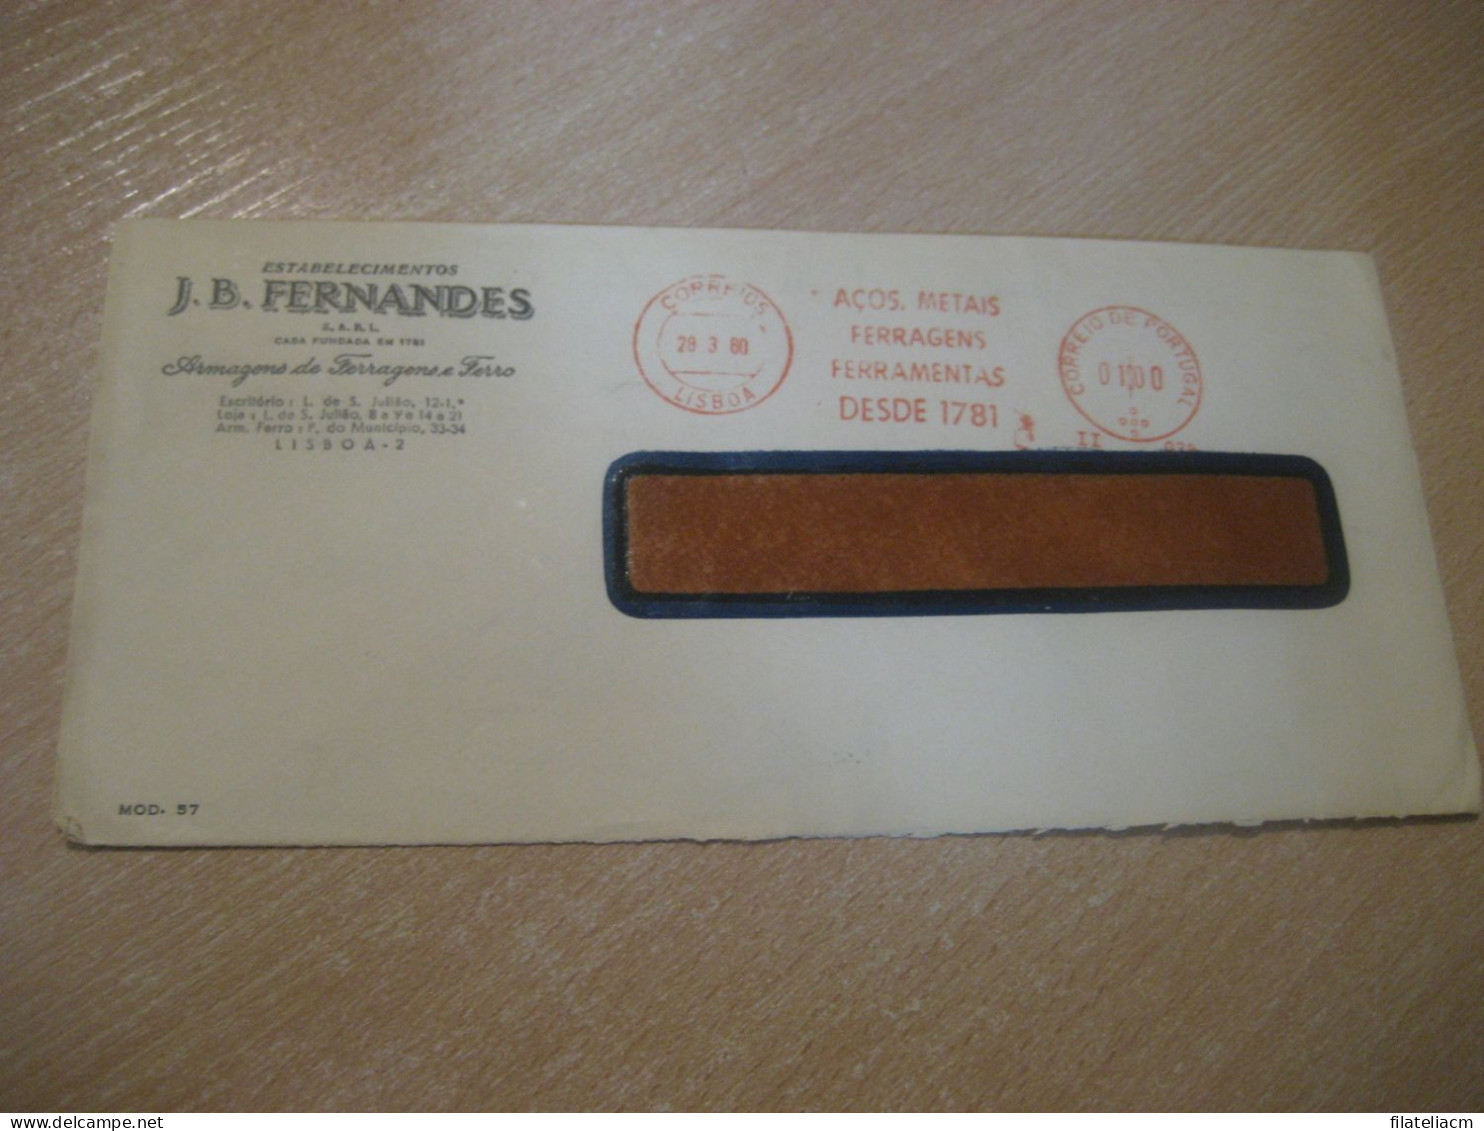 LISBOA 1960 Fernandes Metais Ferragens Ferramentas Meter Mail Cancel SURFORM Cover PORTUGAL - Cartas & Documentos